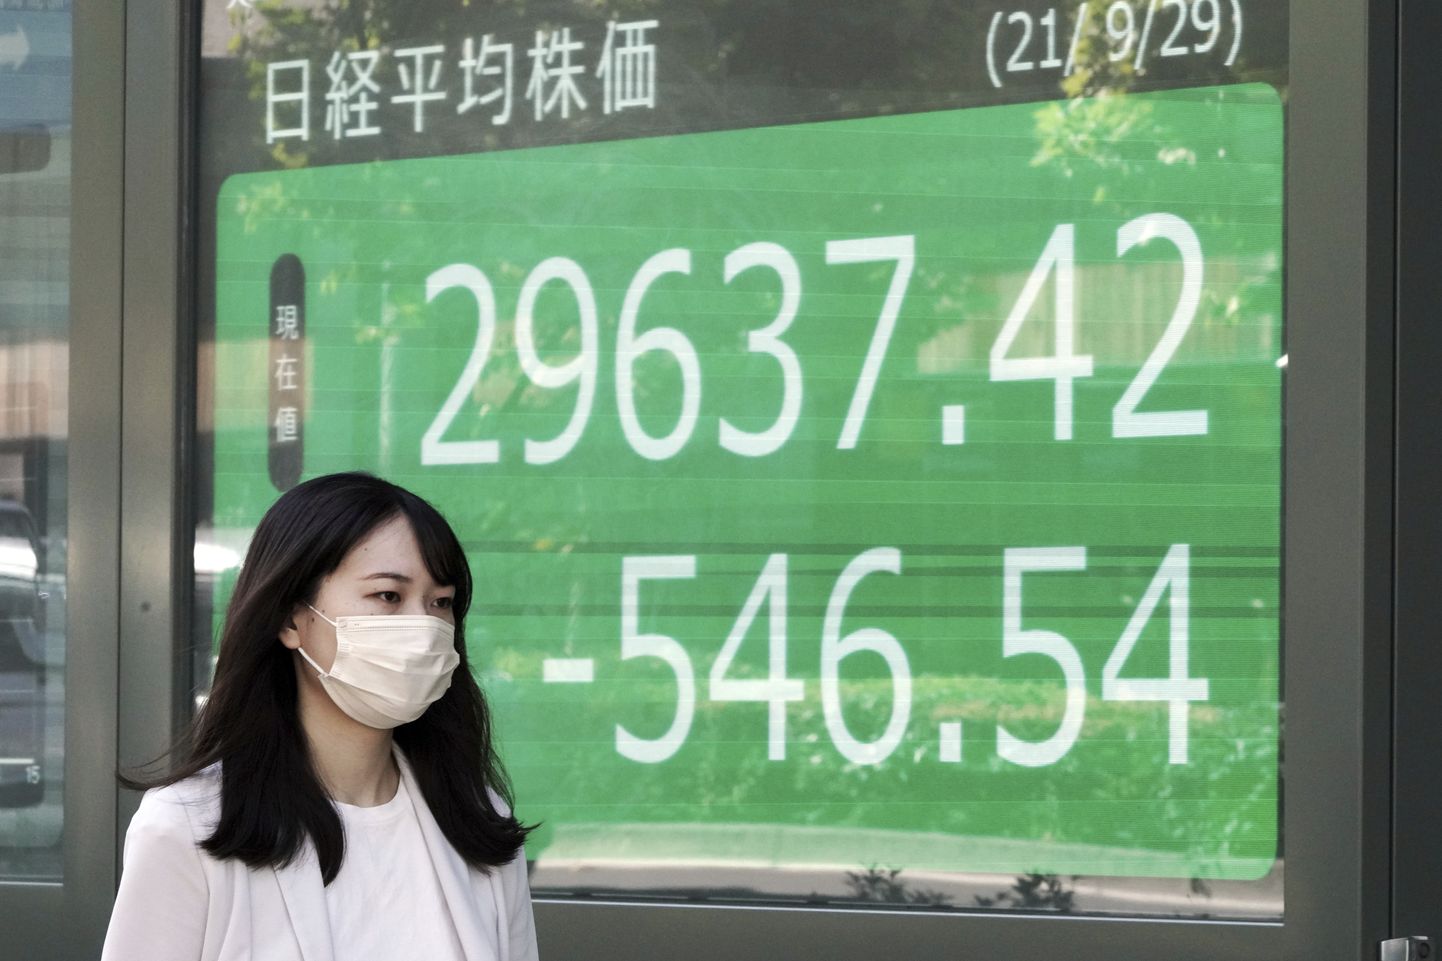 Investor möödub Jaapani börsiinfot näitavast tabloost